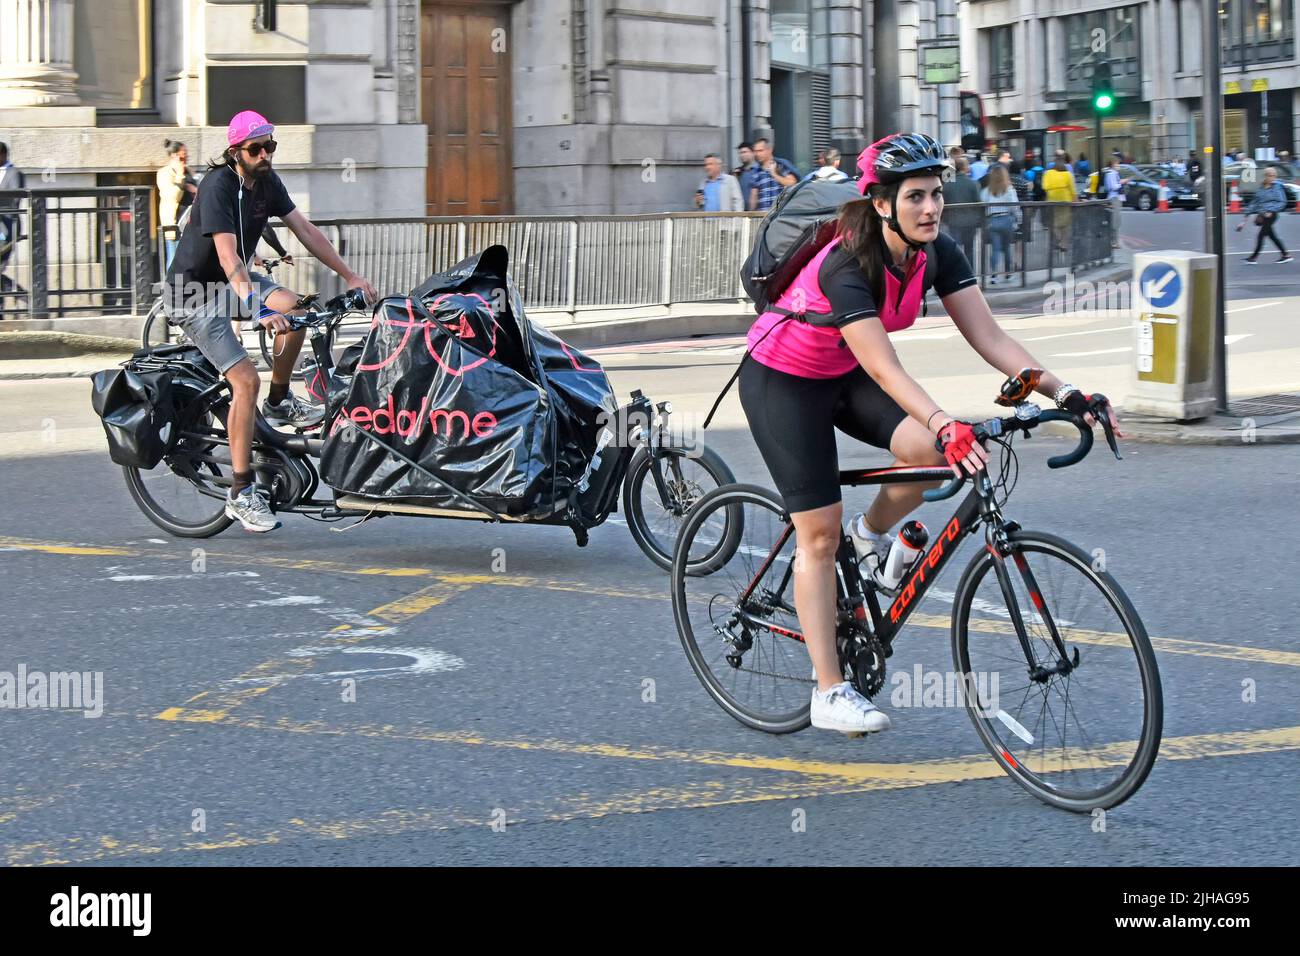 Mujer ciclista con mochila de paseo caída de la palanca de bicicleta barra a través de la ciudad de Londres caja carretera de cruce seguido de un hombre en la larga bicicleta de carga Inglaterra Reino Unido Foto de stock